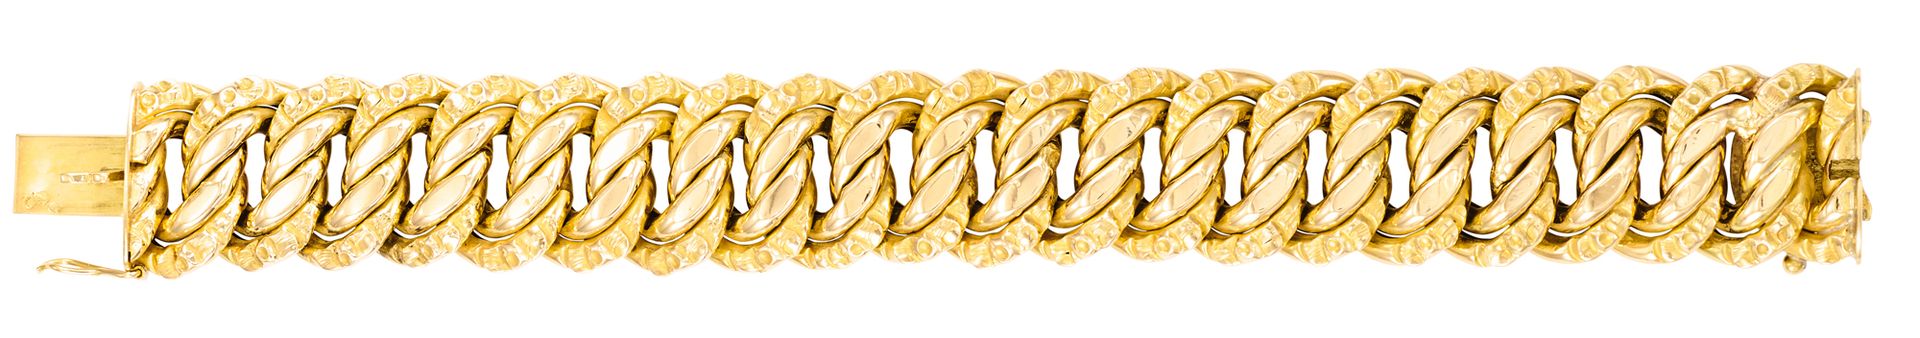 Bracelet 美式黄金 (TU)
长：15.7 厘米 - 宽：2 厘米 
重量：36.30 克（18K-750/1000）